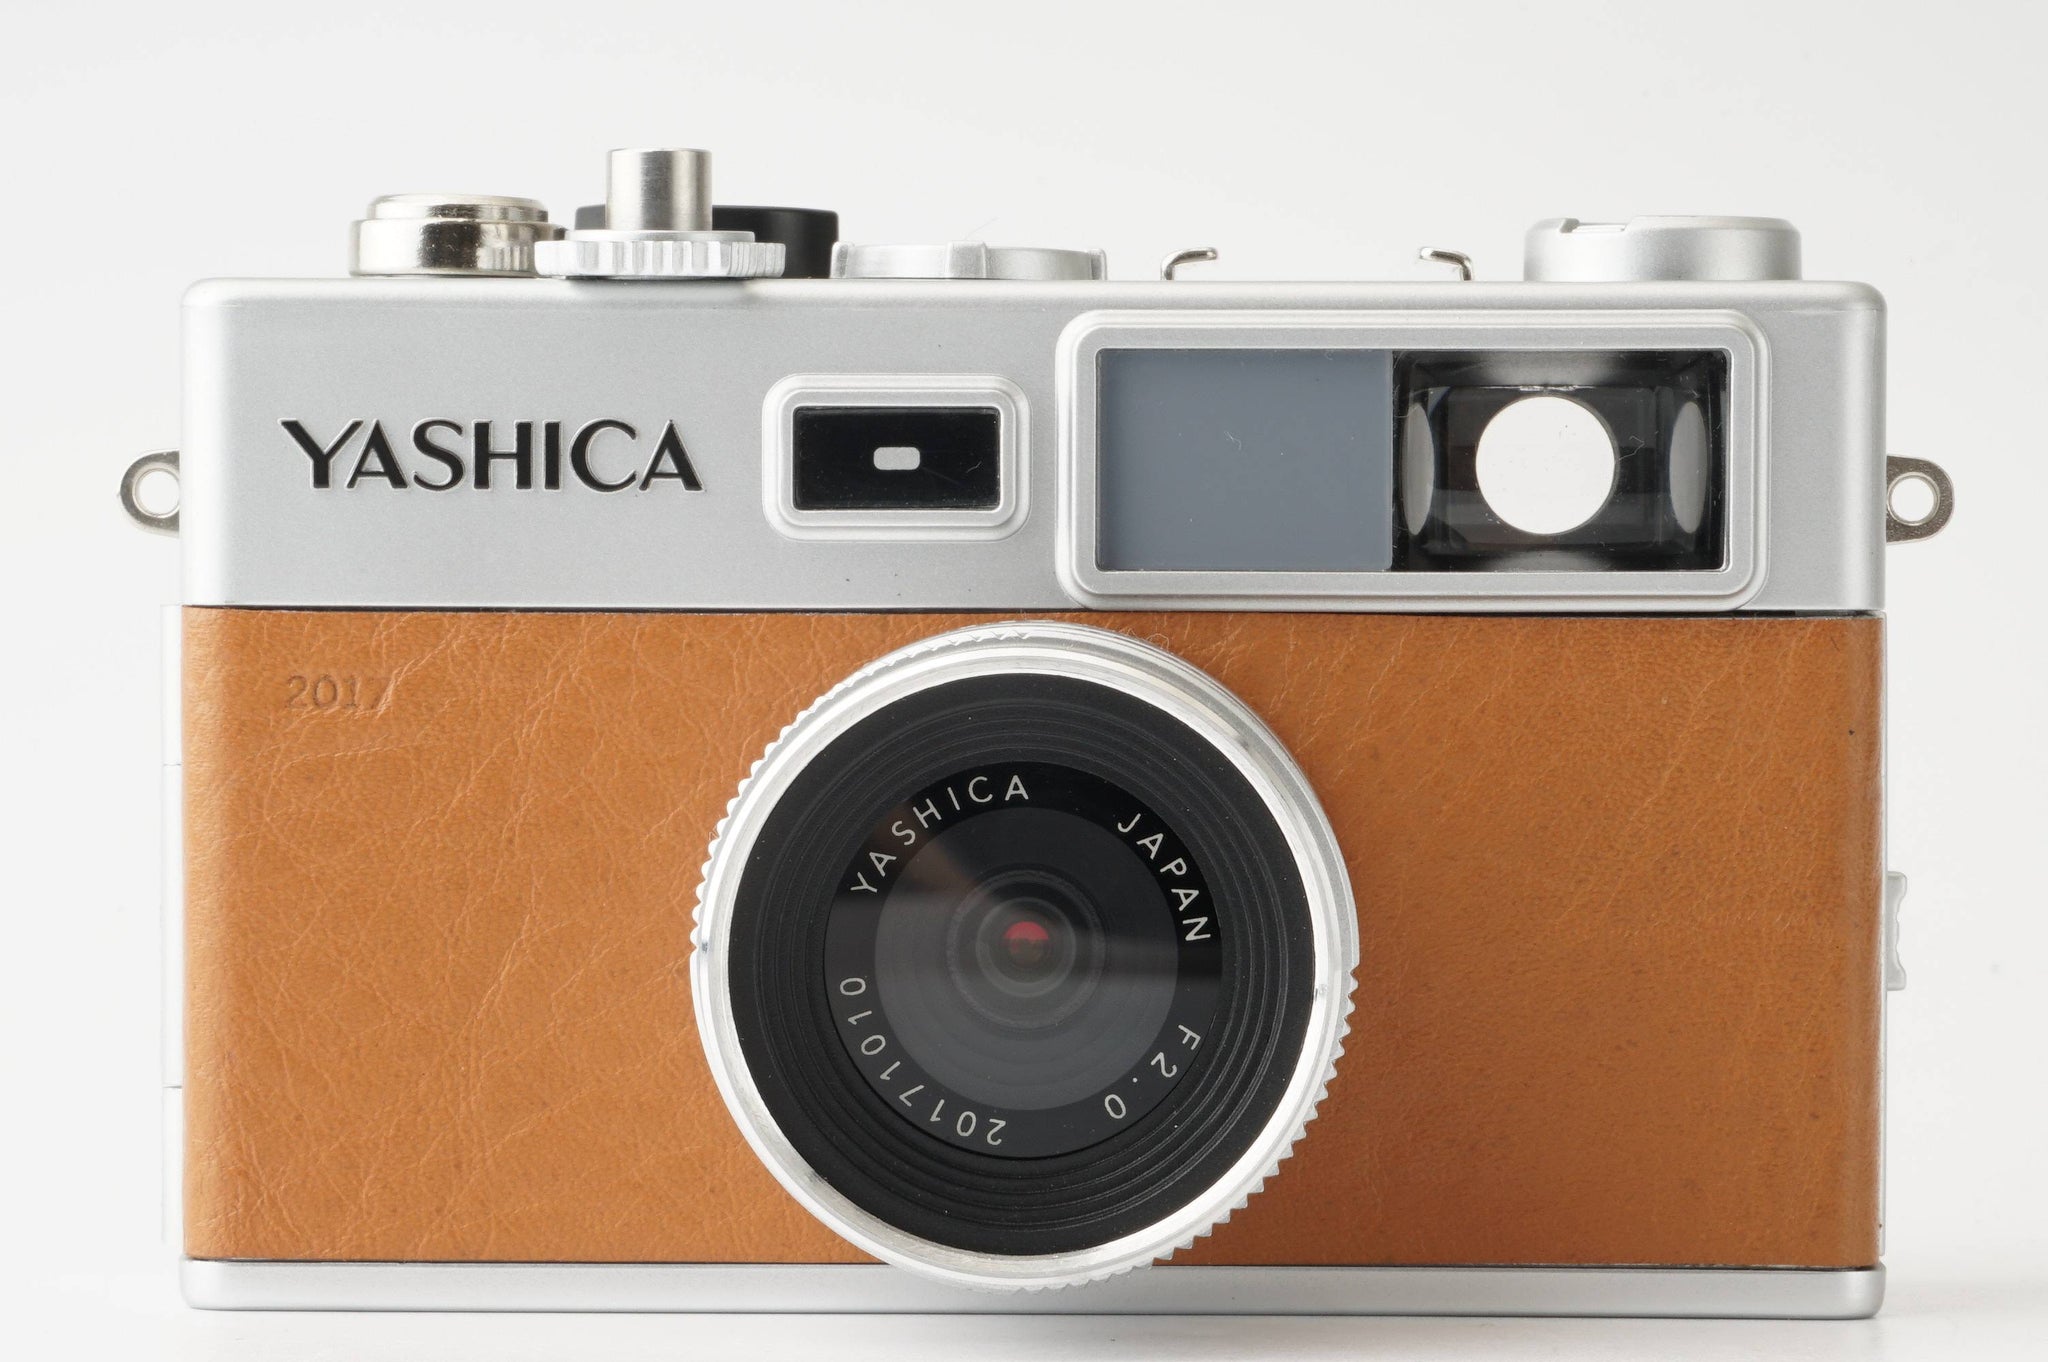 ヤシカ Yashica digiFilm camera y35 / YASHICA F2.0 / デジフィルム6